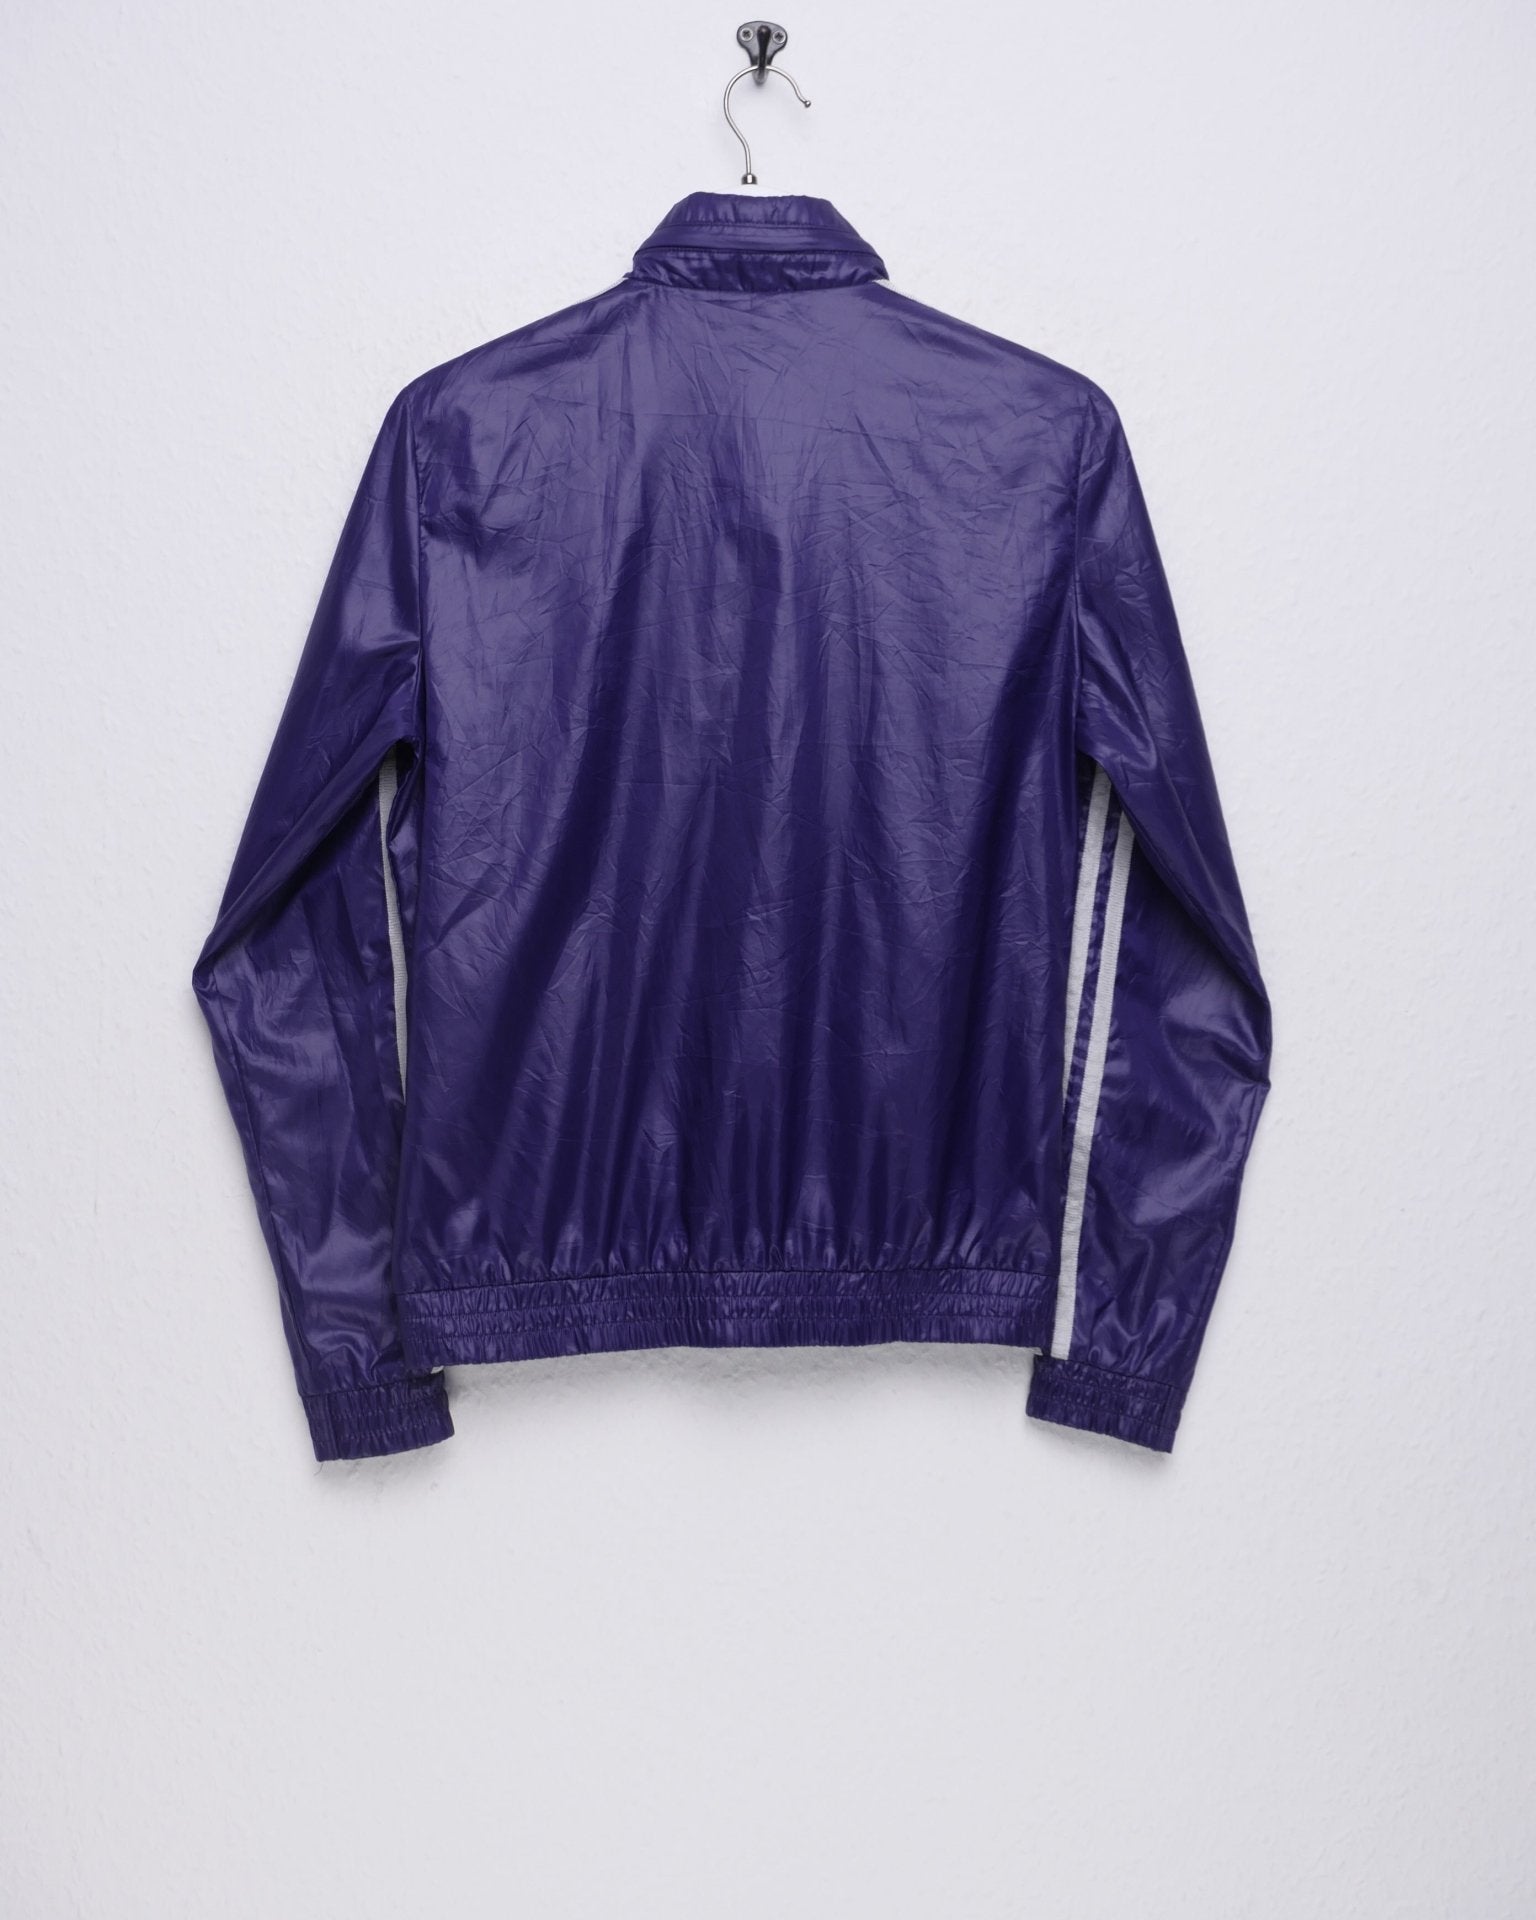 Adidas embroidered Logo purple Track Jacke - Peeces